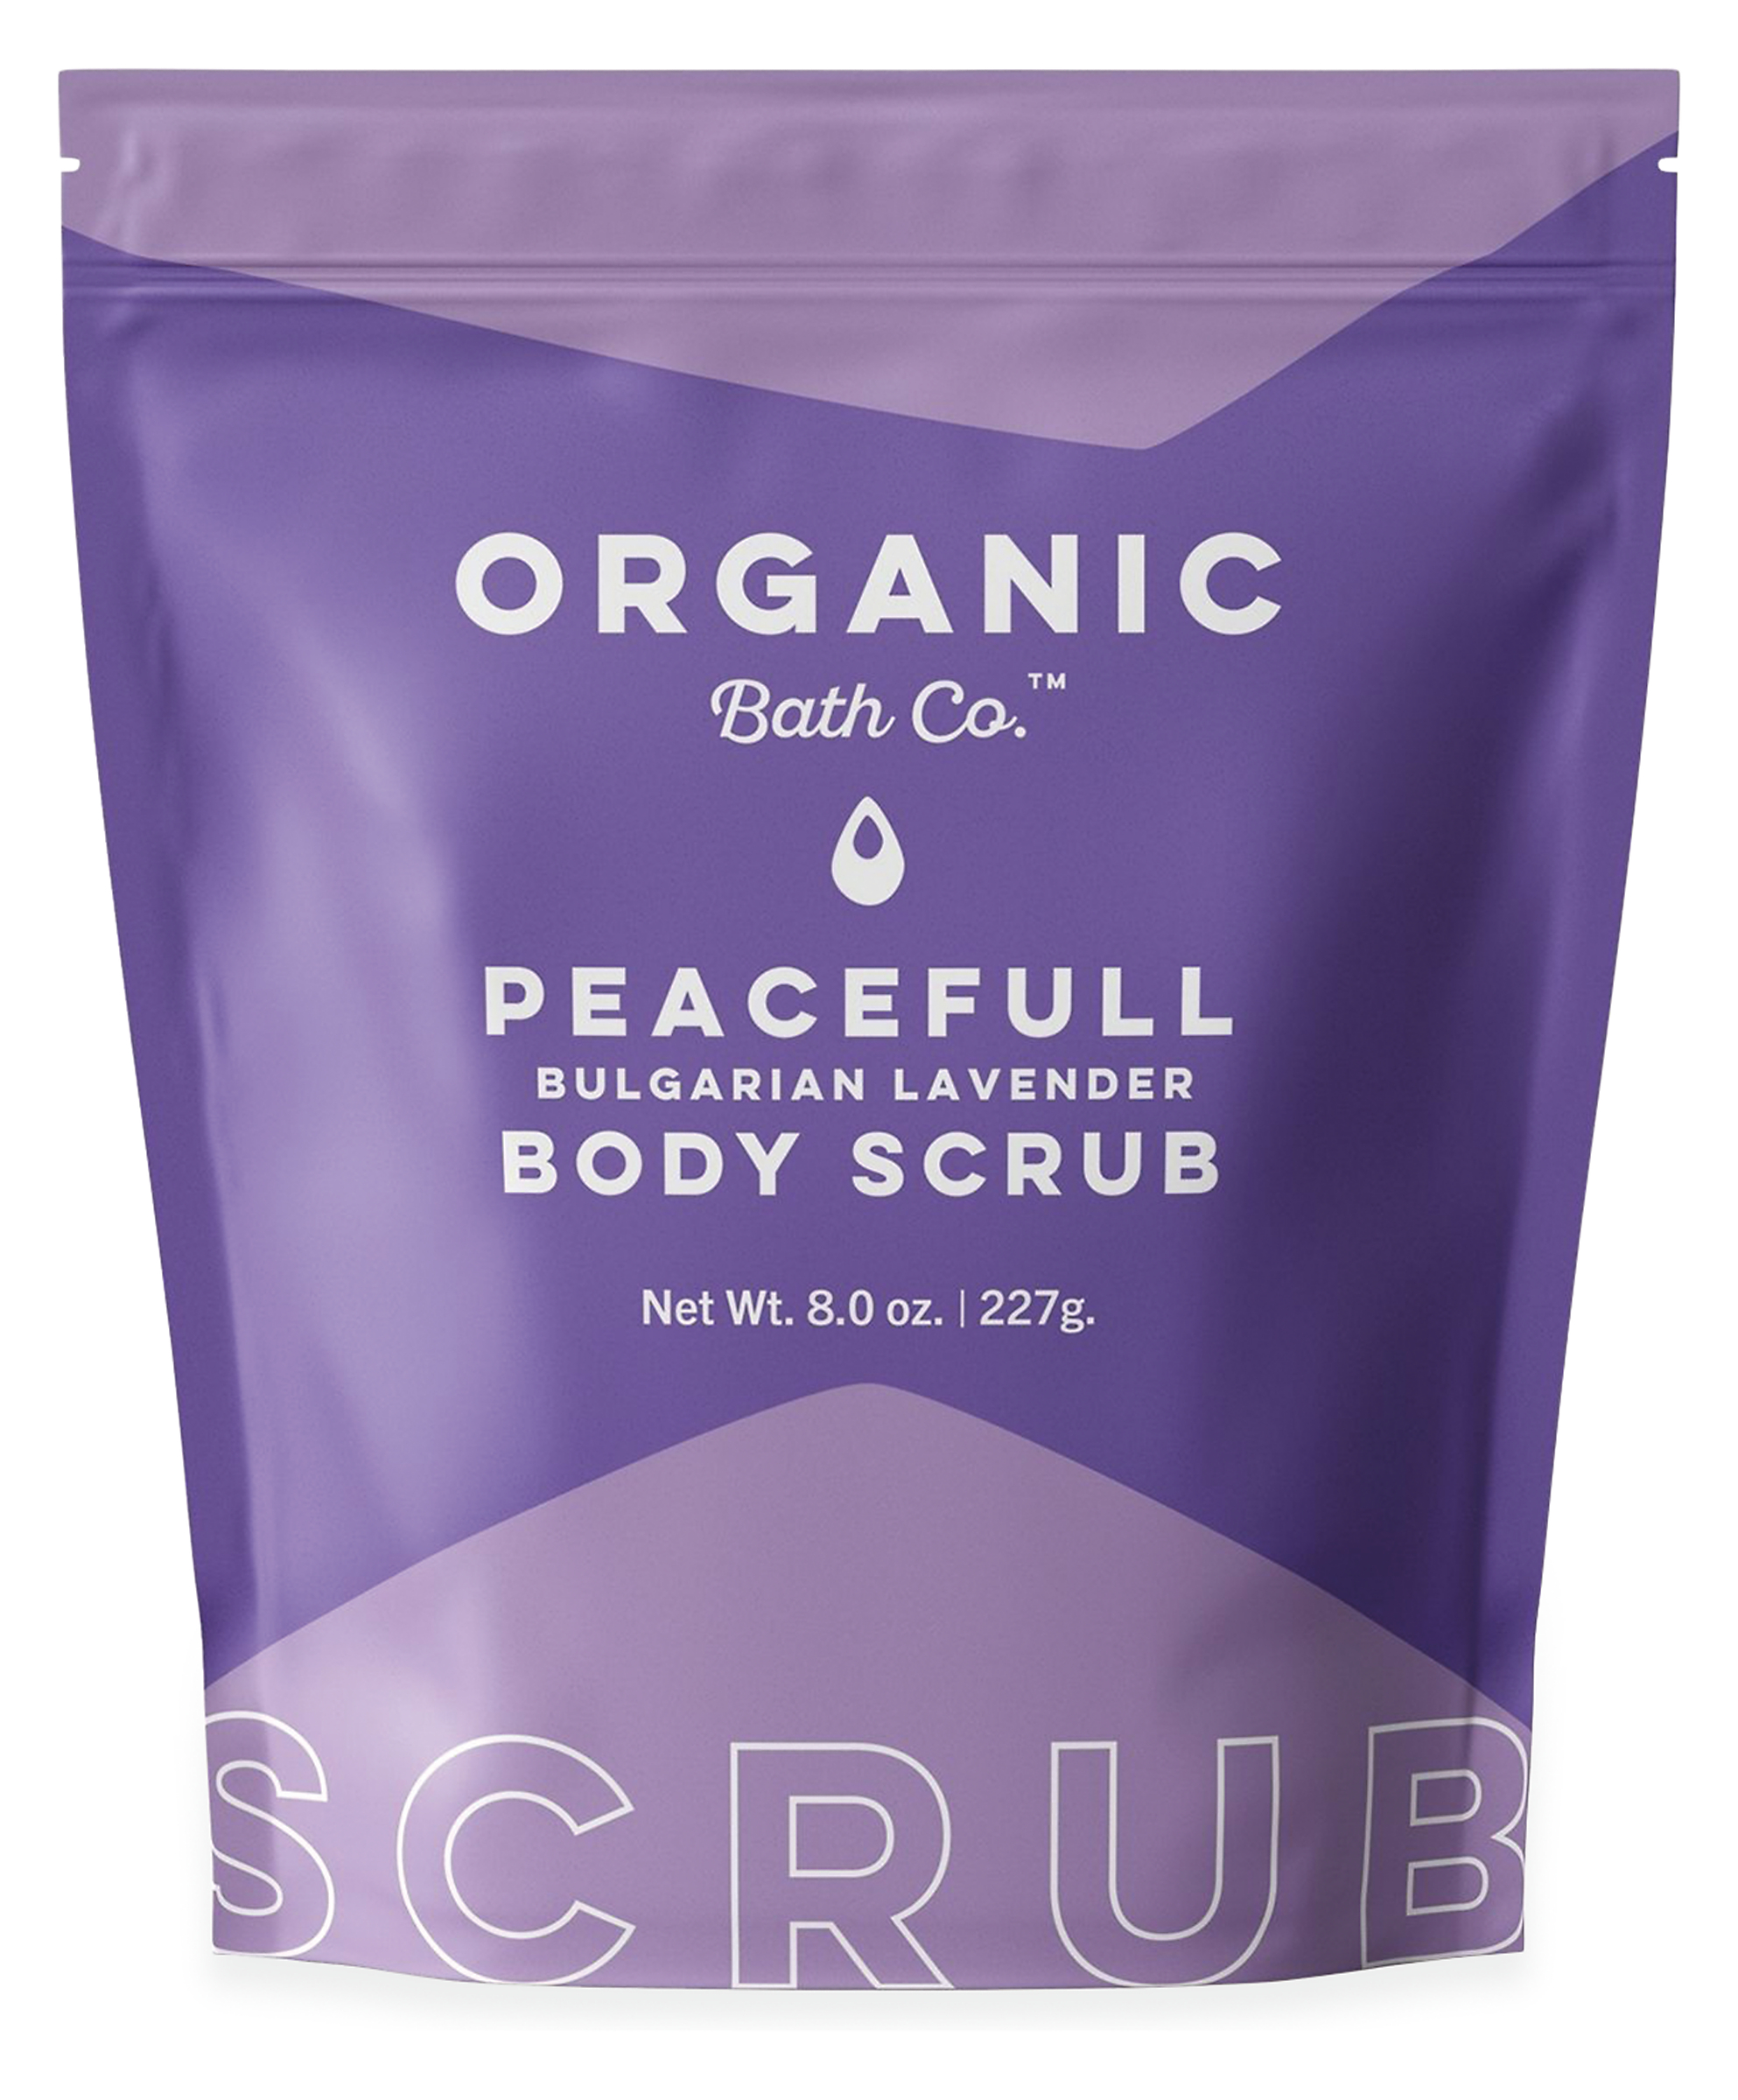 Organic Bath Co. Body Scrub